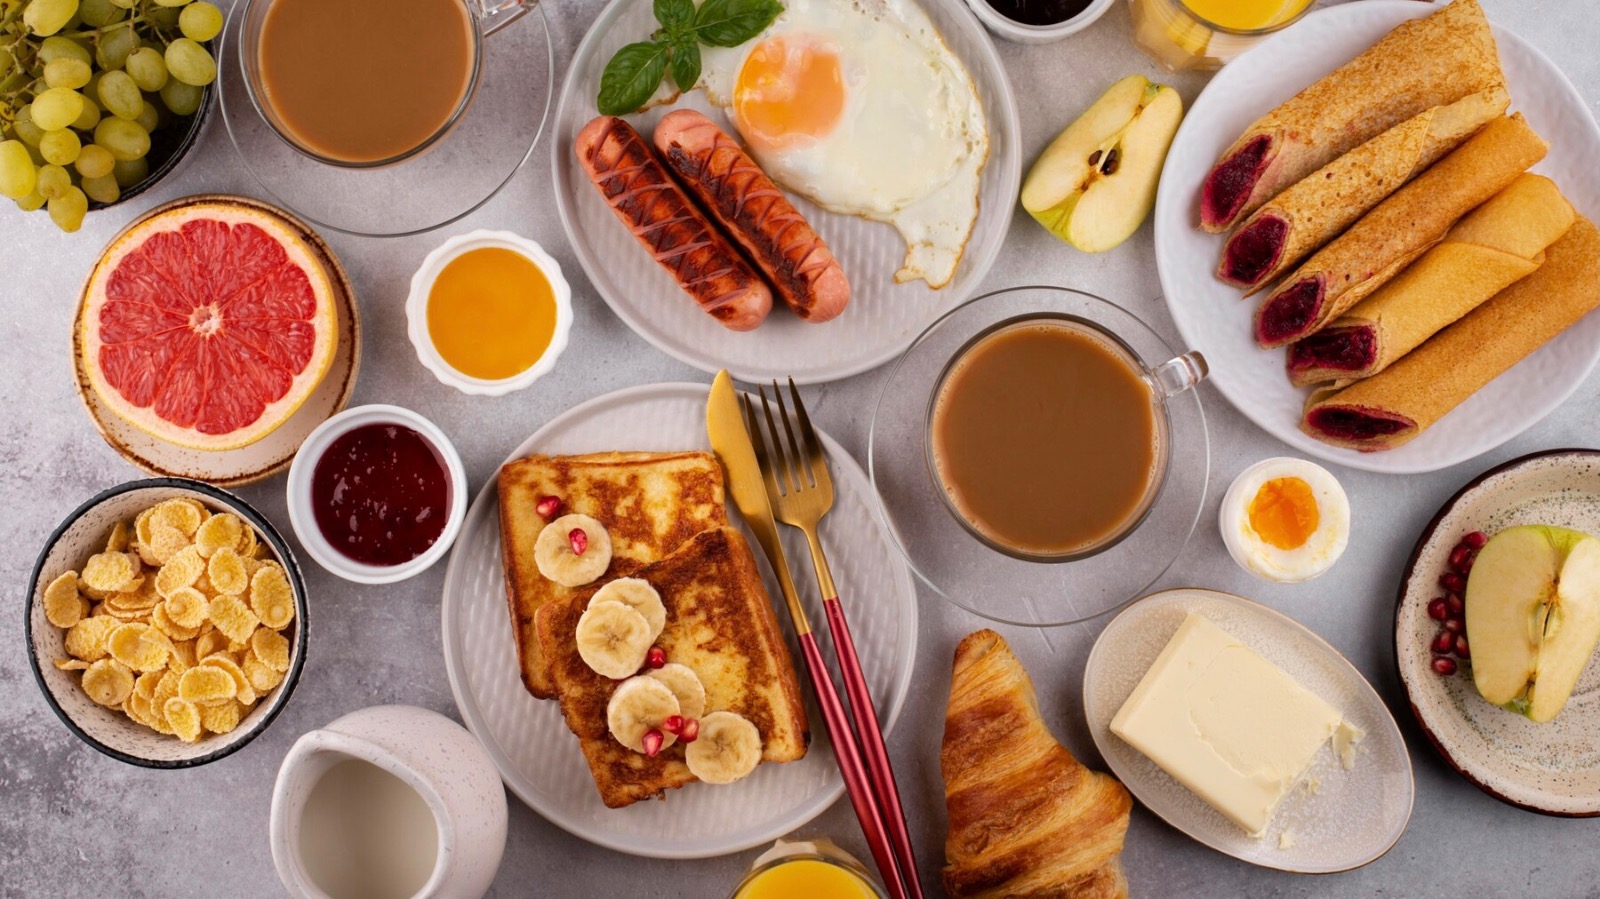 Contoh makanan untuk sarapan pagi yang sehat. (Sumber gambar : Freepik)